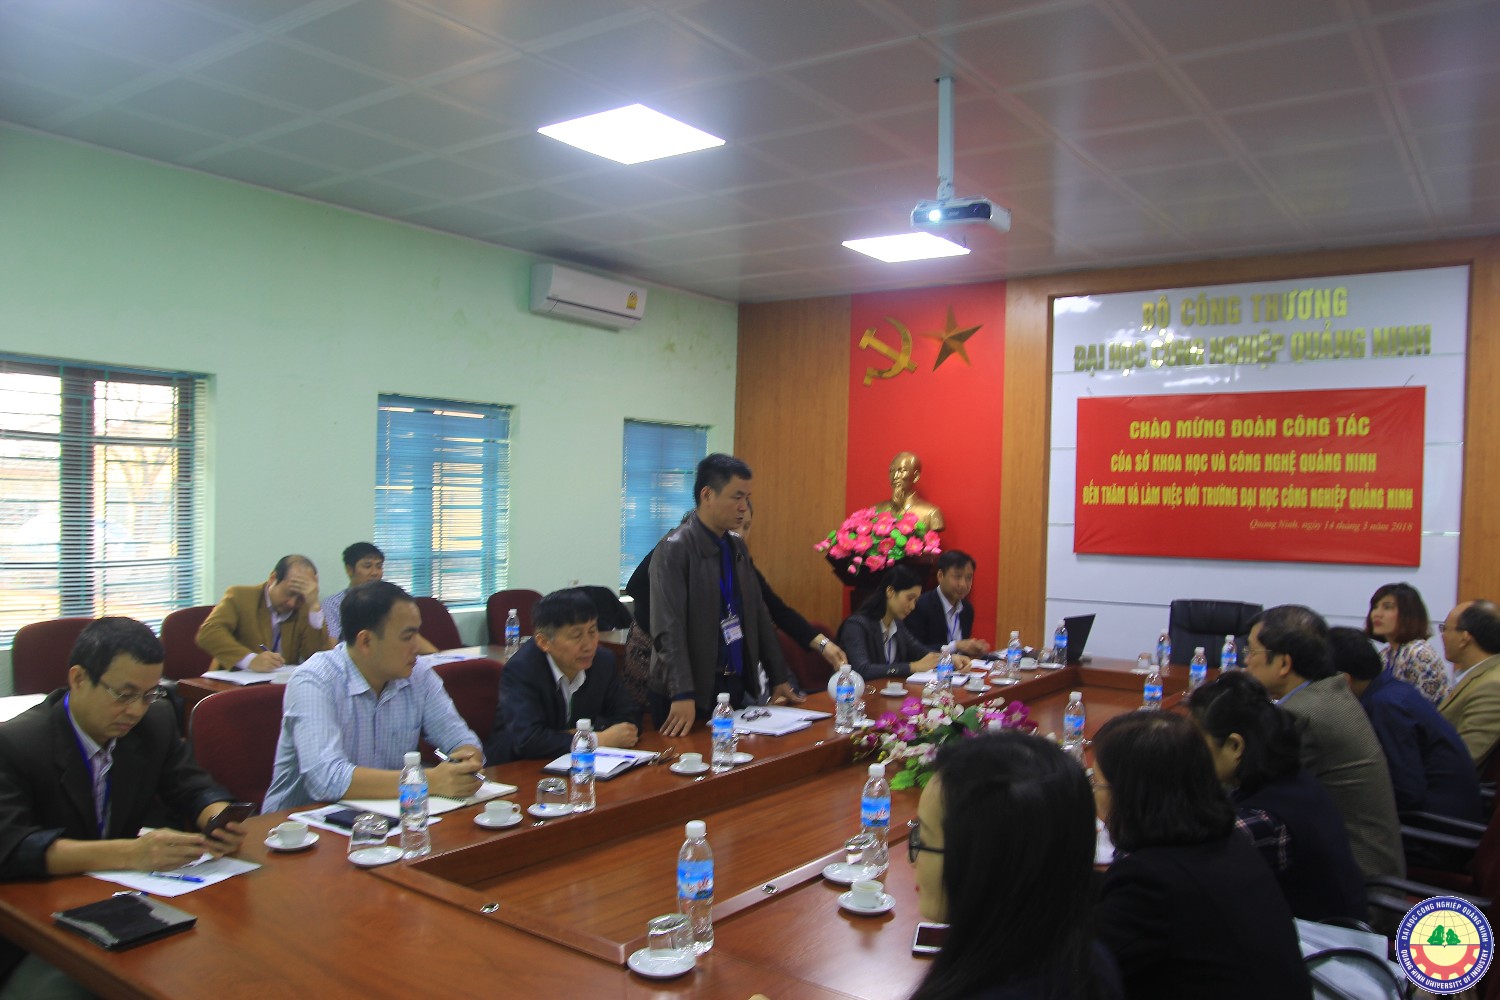 Đoàn công tác của Sở KHCN tỉnh Quảng Ninh làm việc với Nhà trường